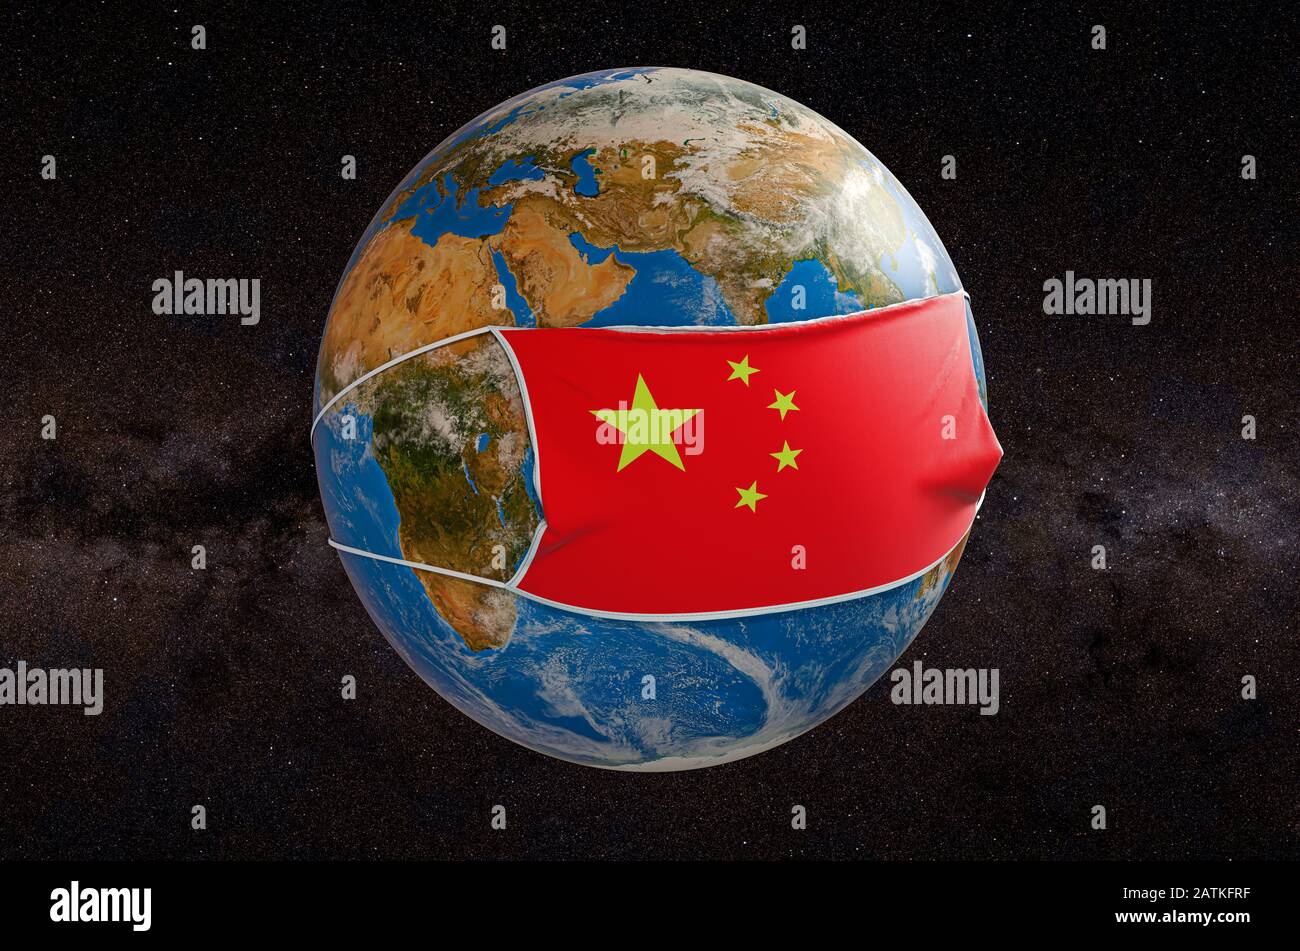 Globale Epidemie des chinesischen Coronavirus Konzepts. Earth Globe in einer medizinischen Maske mit Flagge Chinas im All. 3D-Rendering Stockfoto